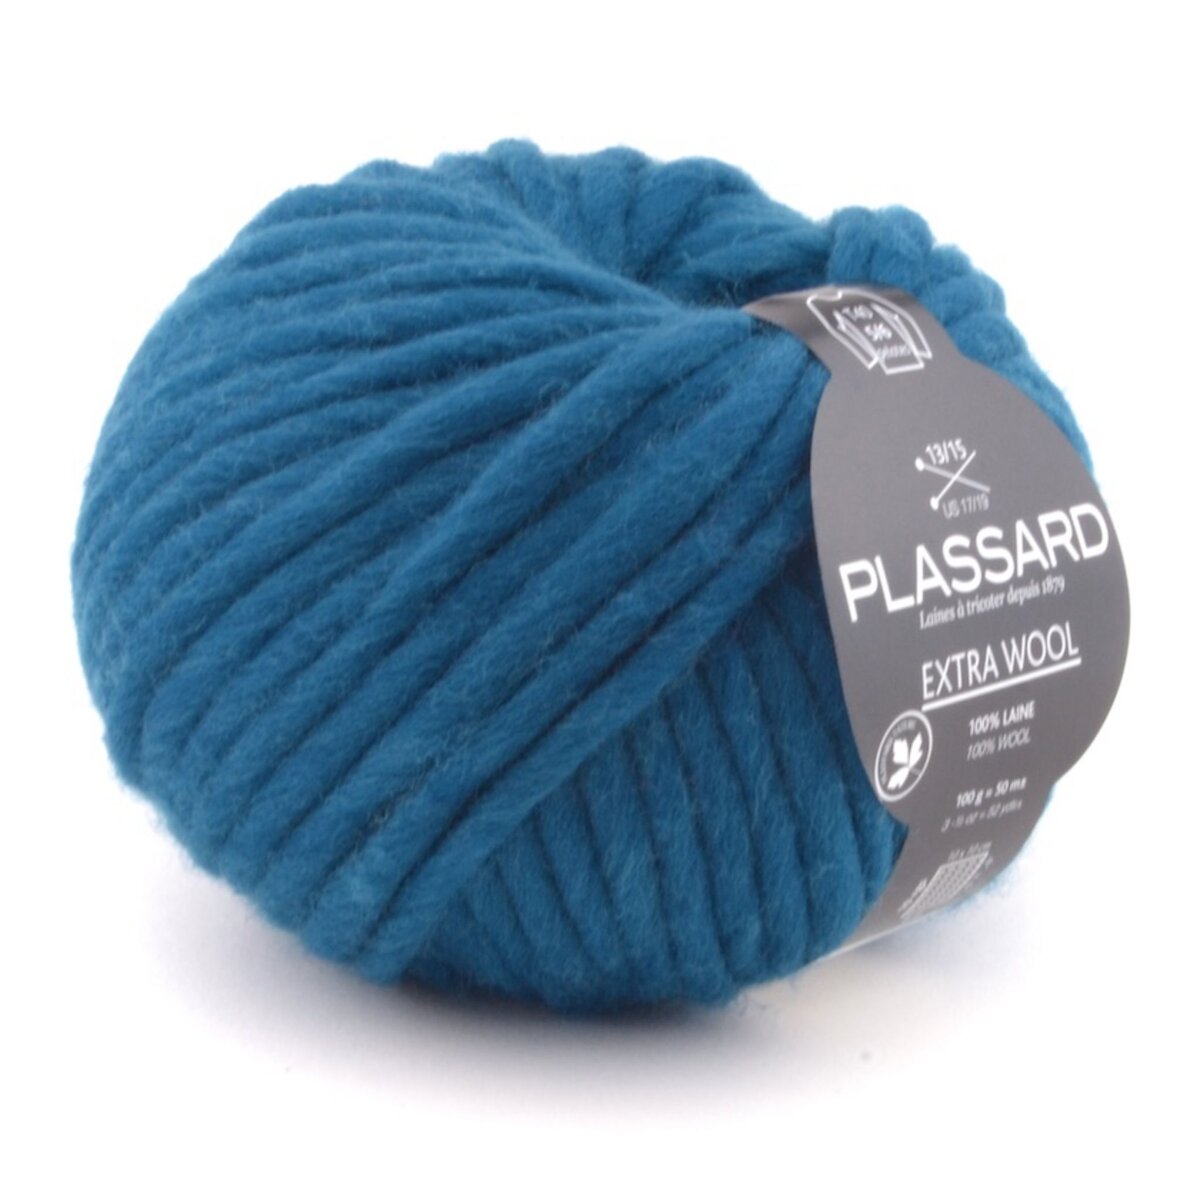 Plassard Grosse laine mèche Extra Wool 306 Bleu 100% Laine pas cher 